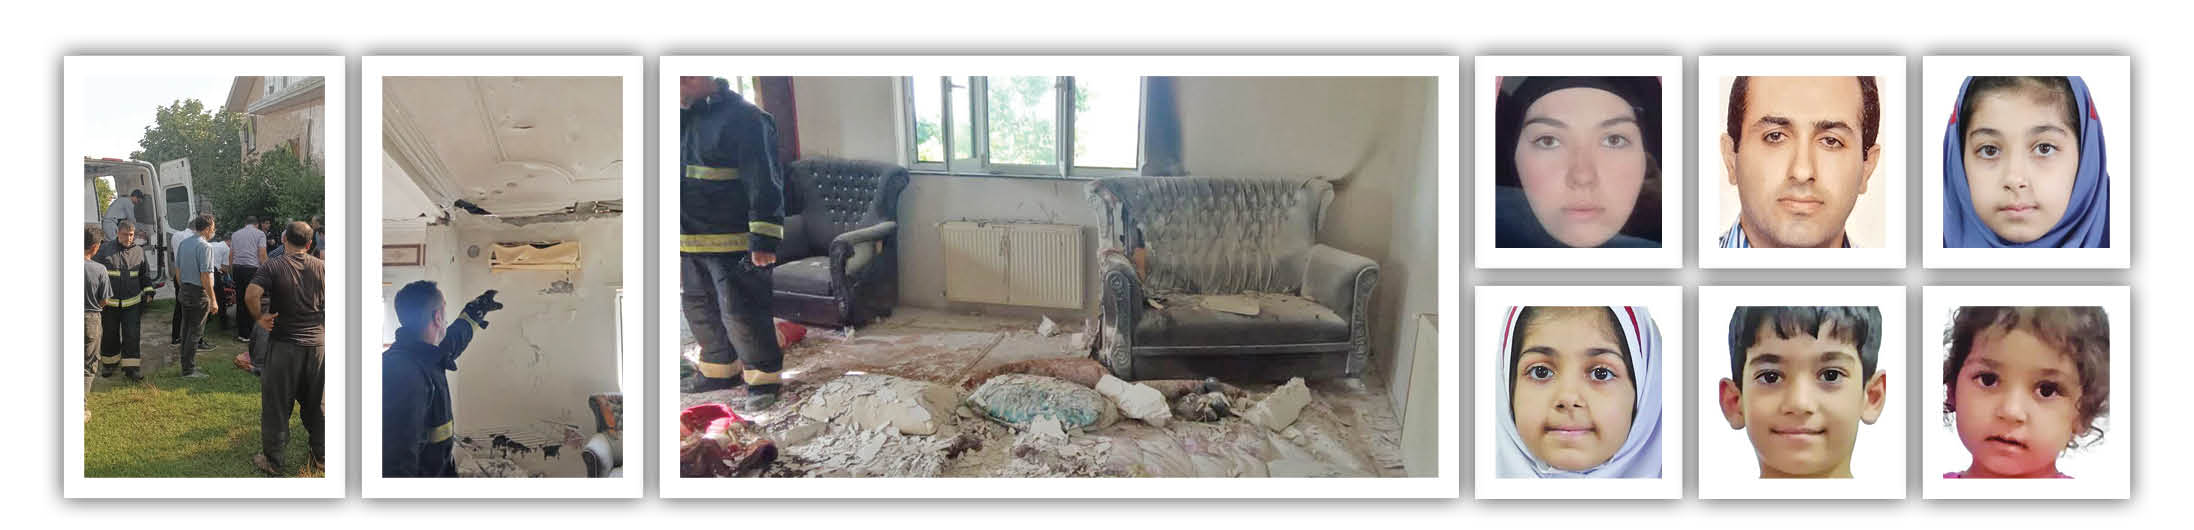 انفجار گاز در خانه ویلایی در بابلسر 6عضو خانواده را به کام مرگ برد